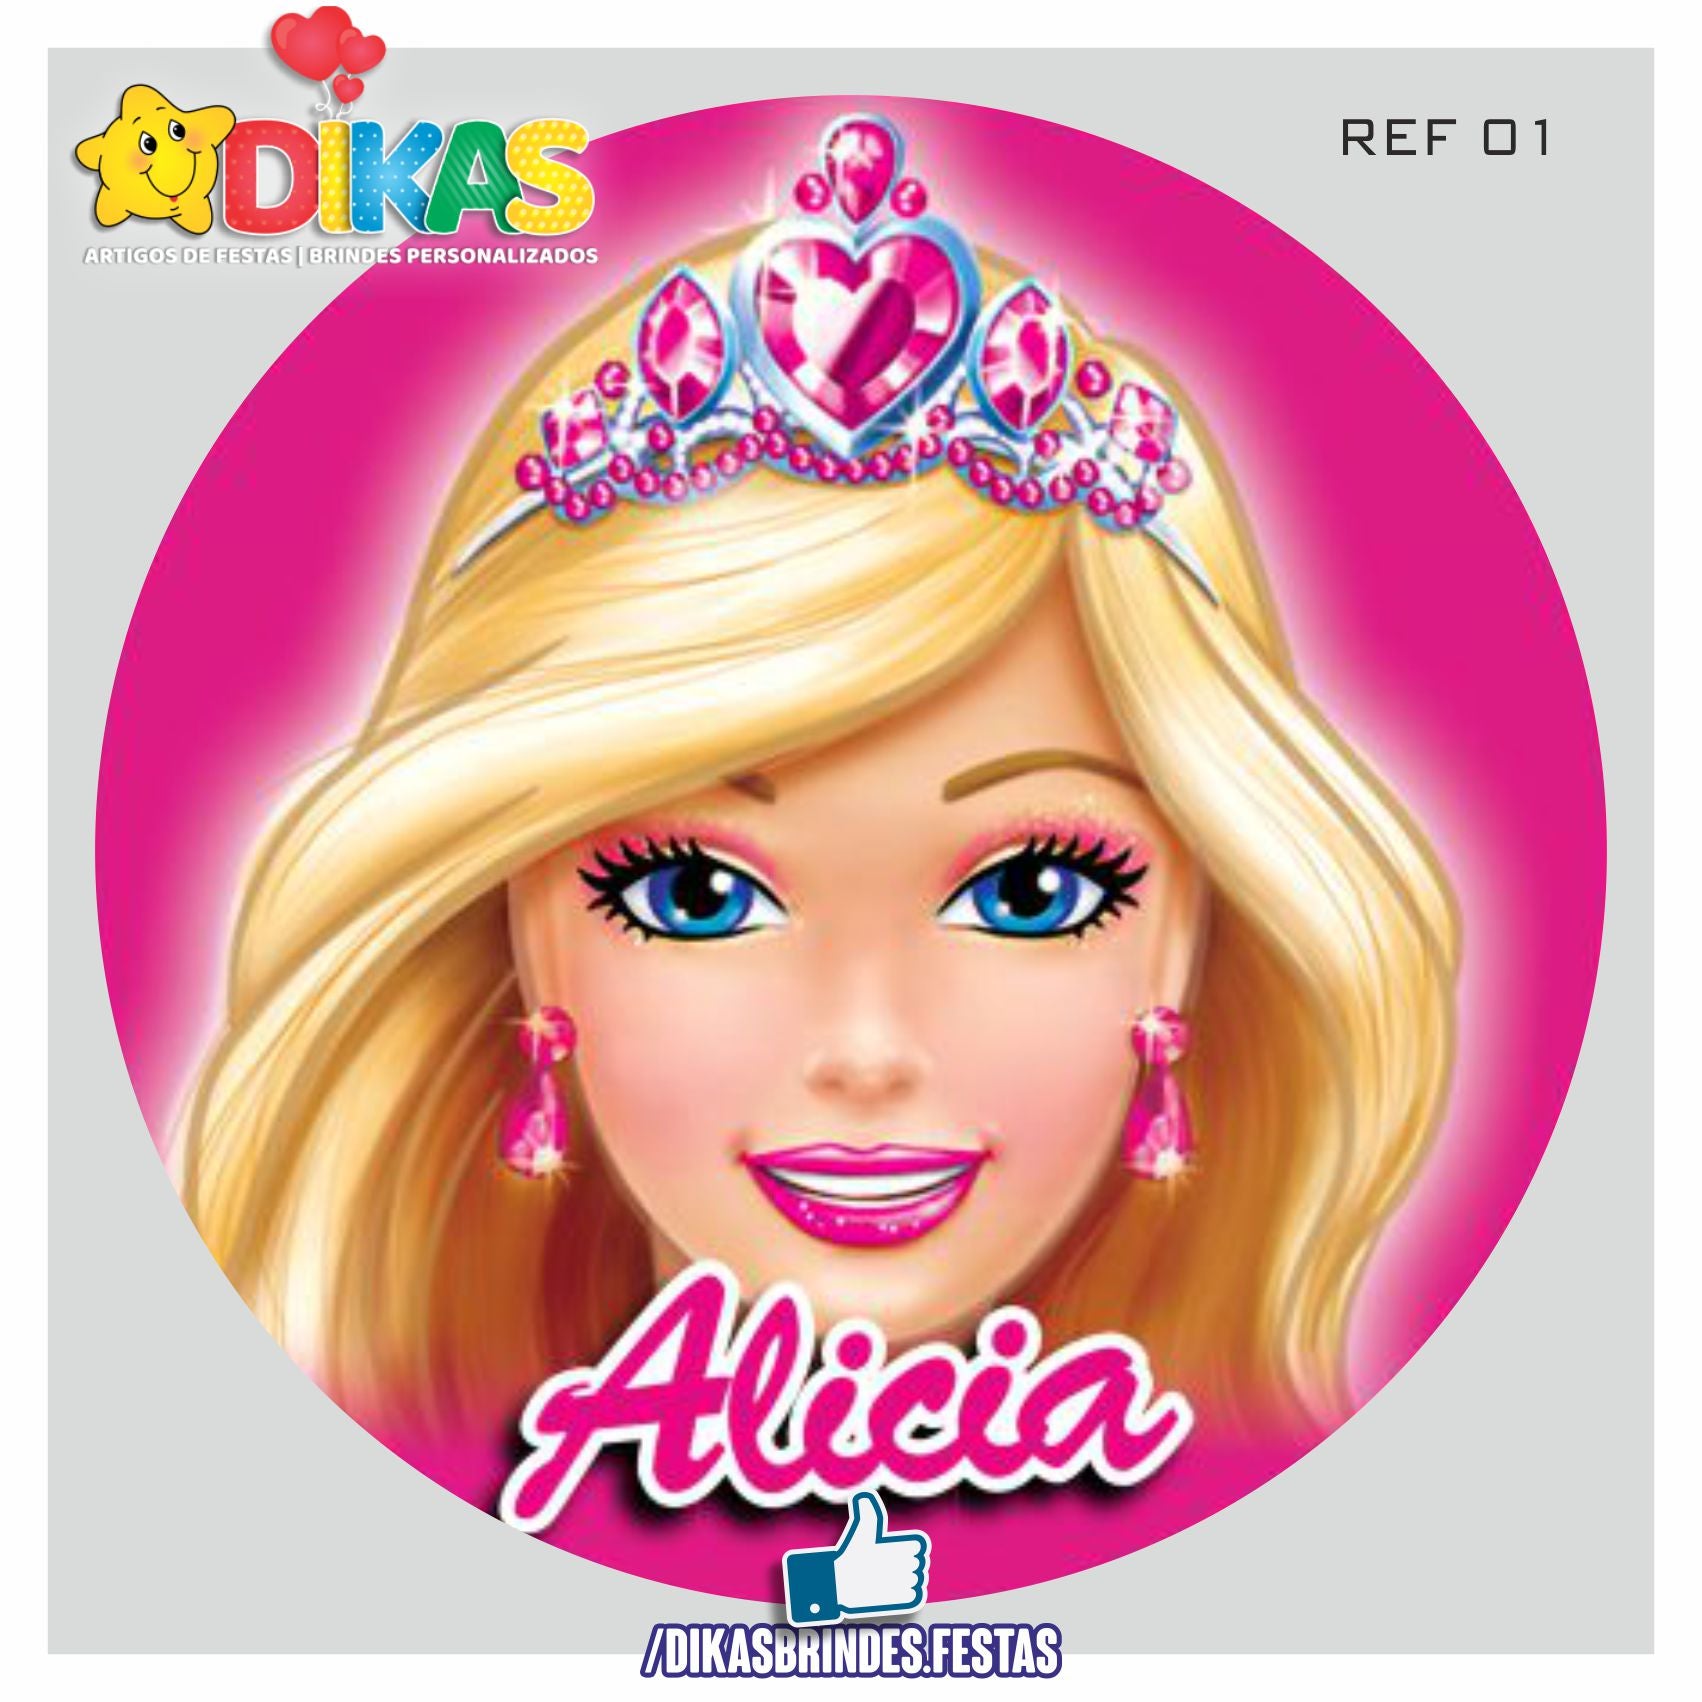 Personalizados Barbie e a Princesa Pop Star - 20 Itens